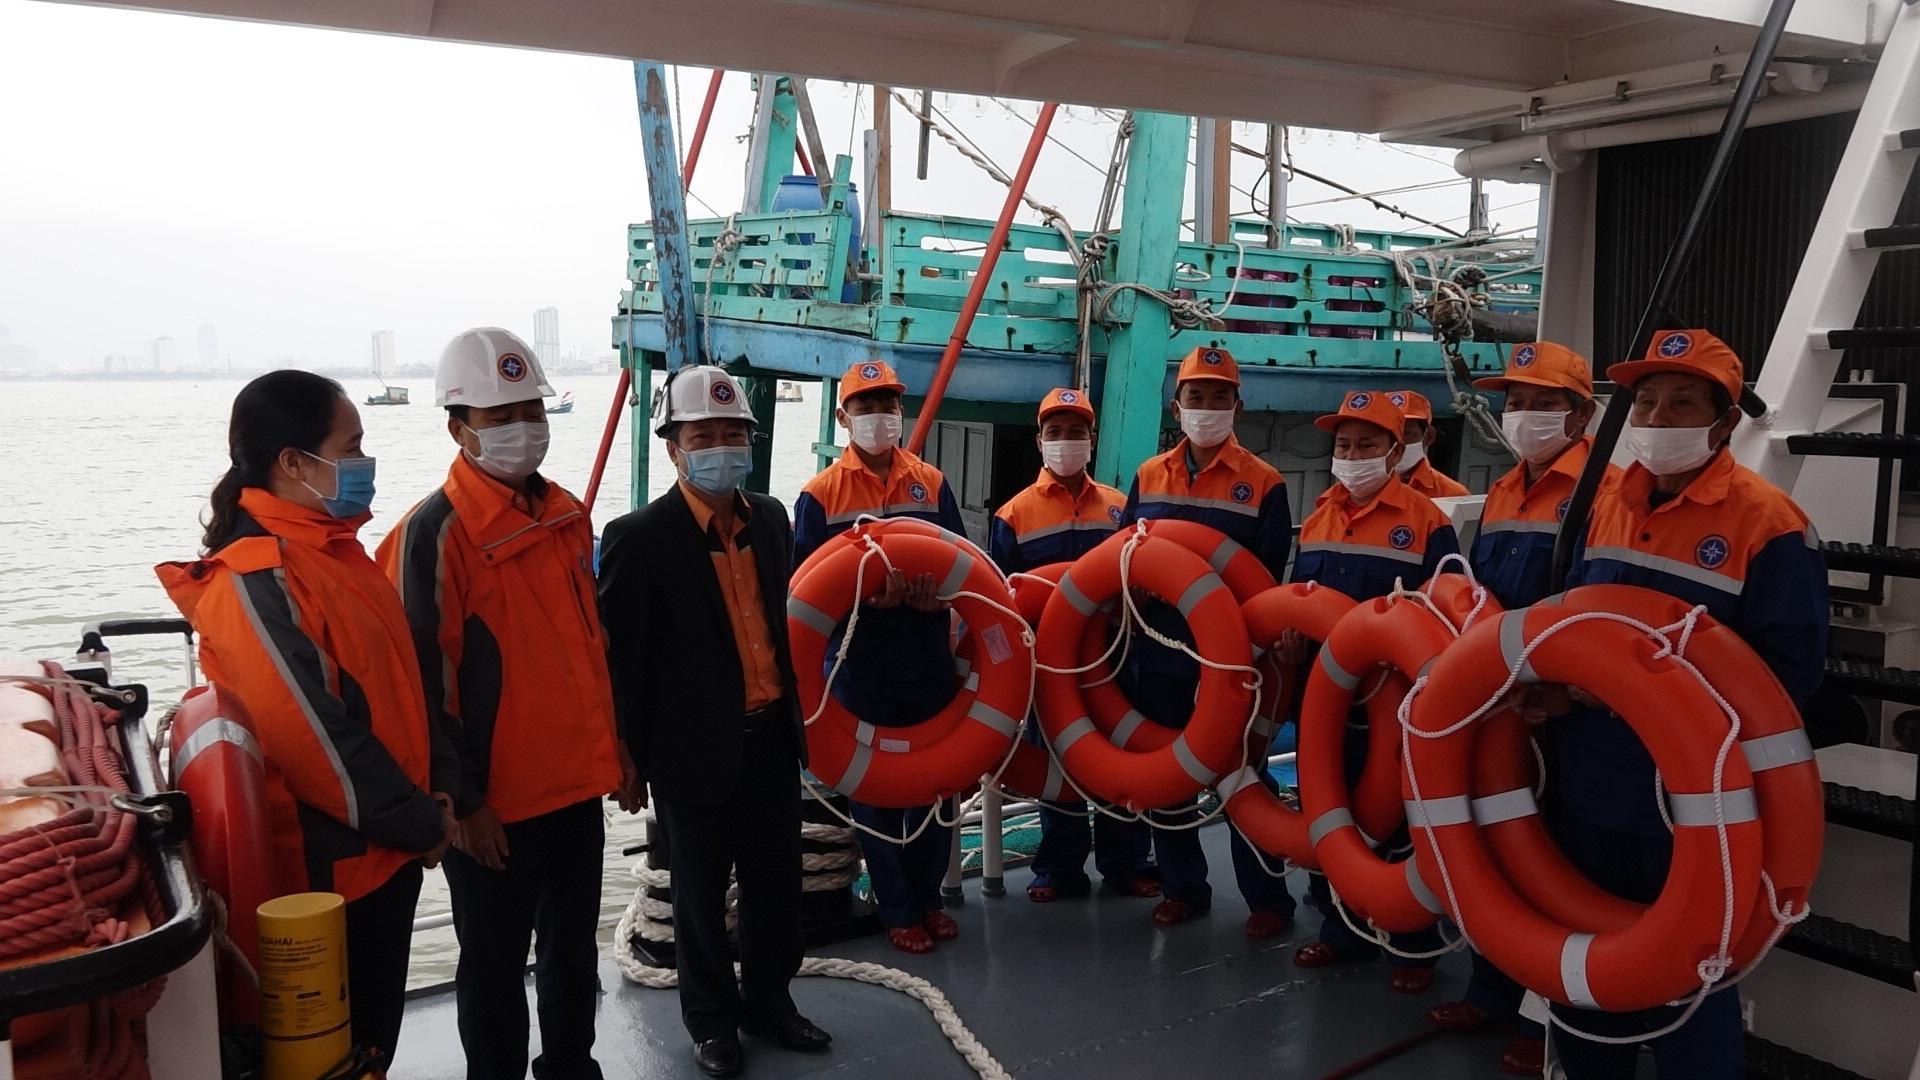 Cứu nạn 7 ngư dân tỉnh Bình Định trôi dạt trong biển động, tàu bị phá nước - ảnh 2